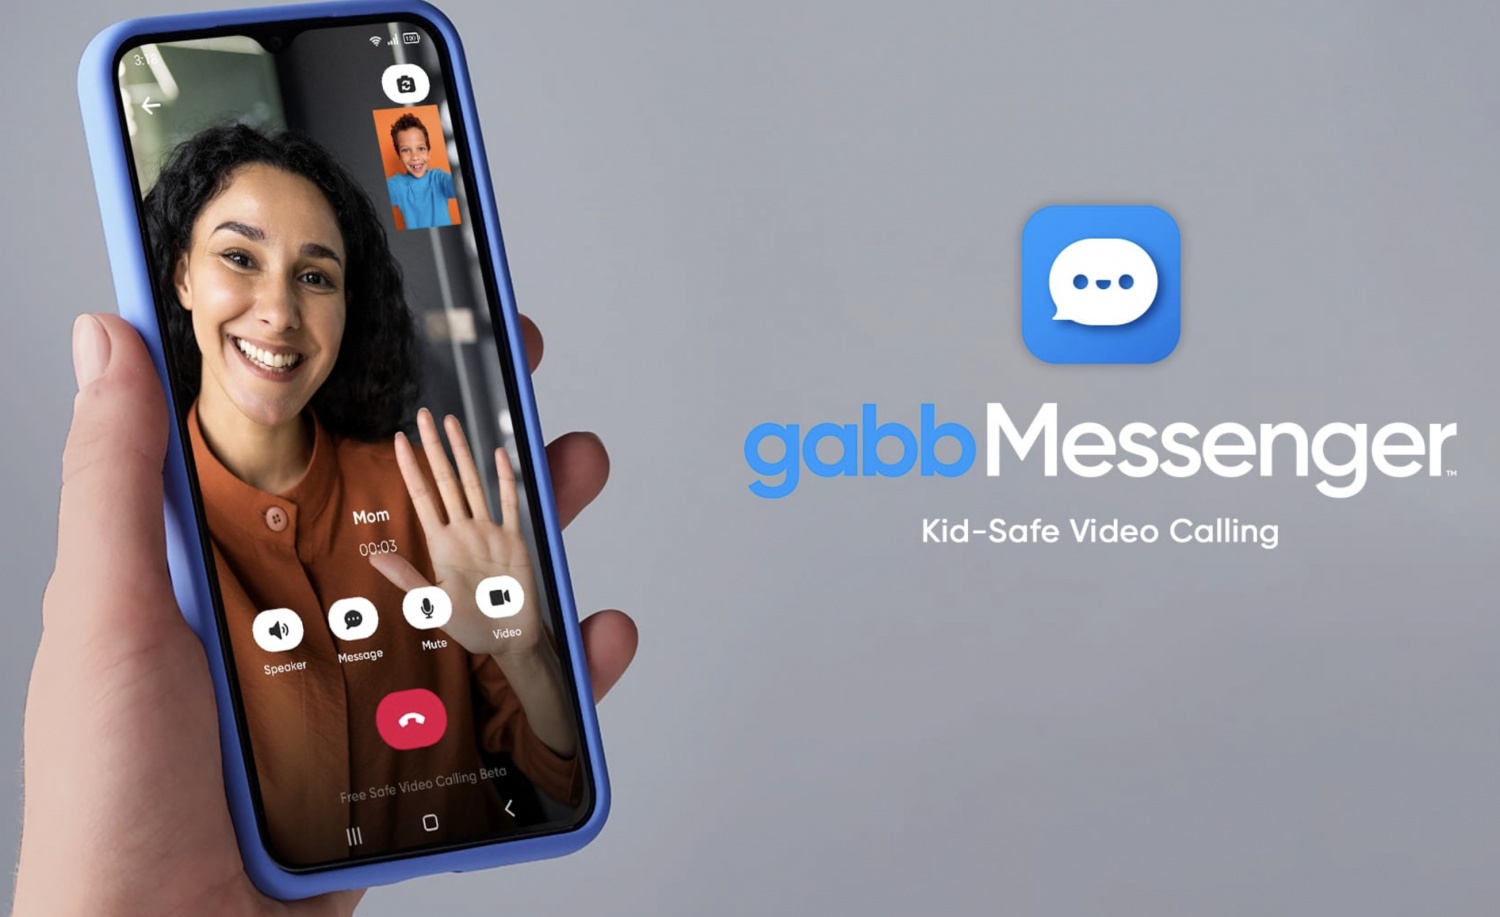 Gabb Messenger